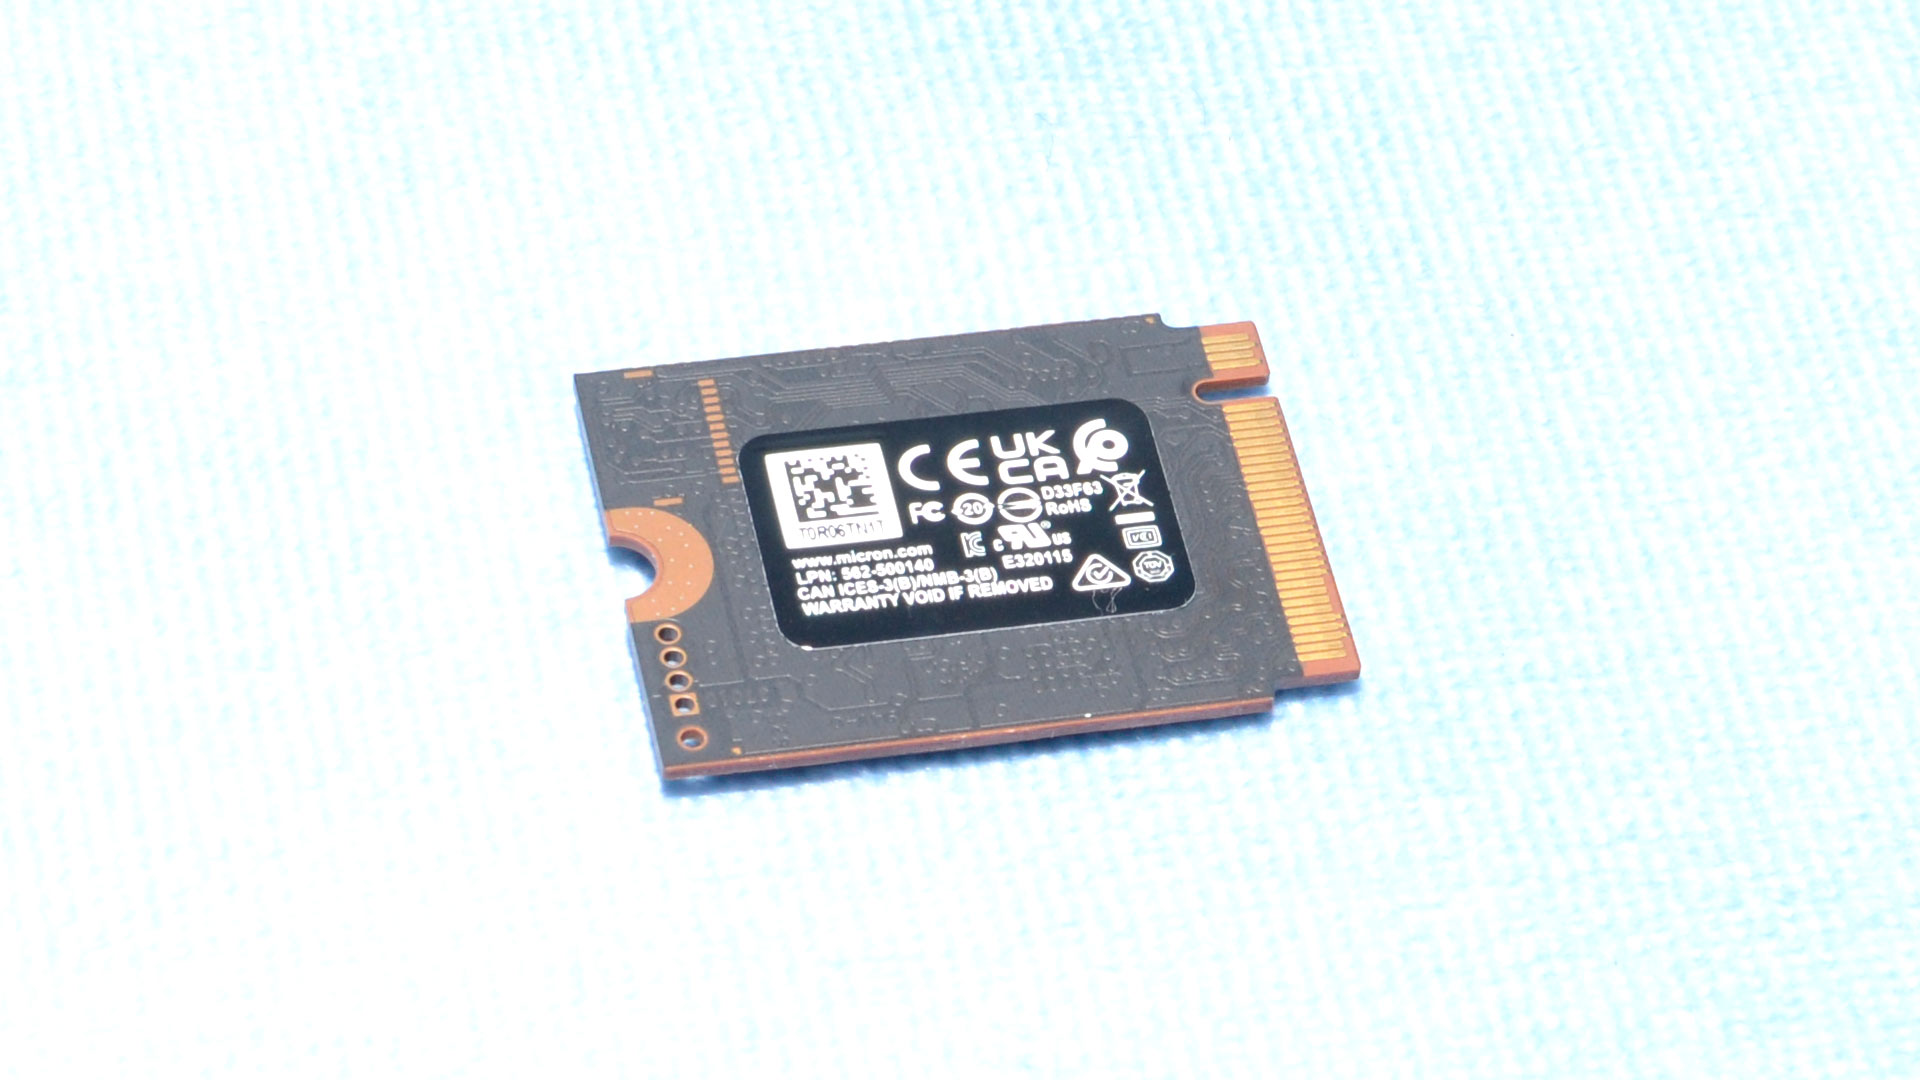 Kritik P310 (2230) 2TB SSD